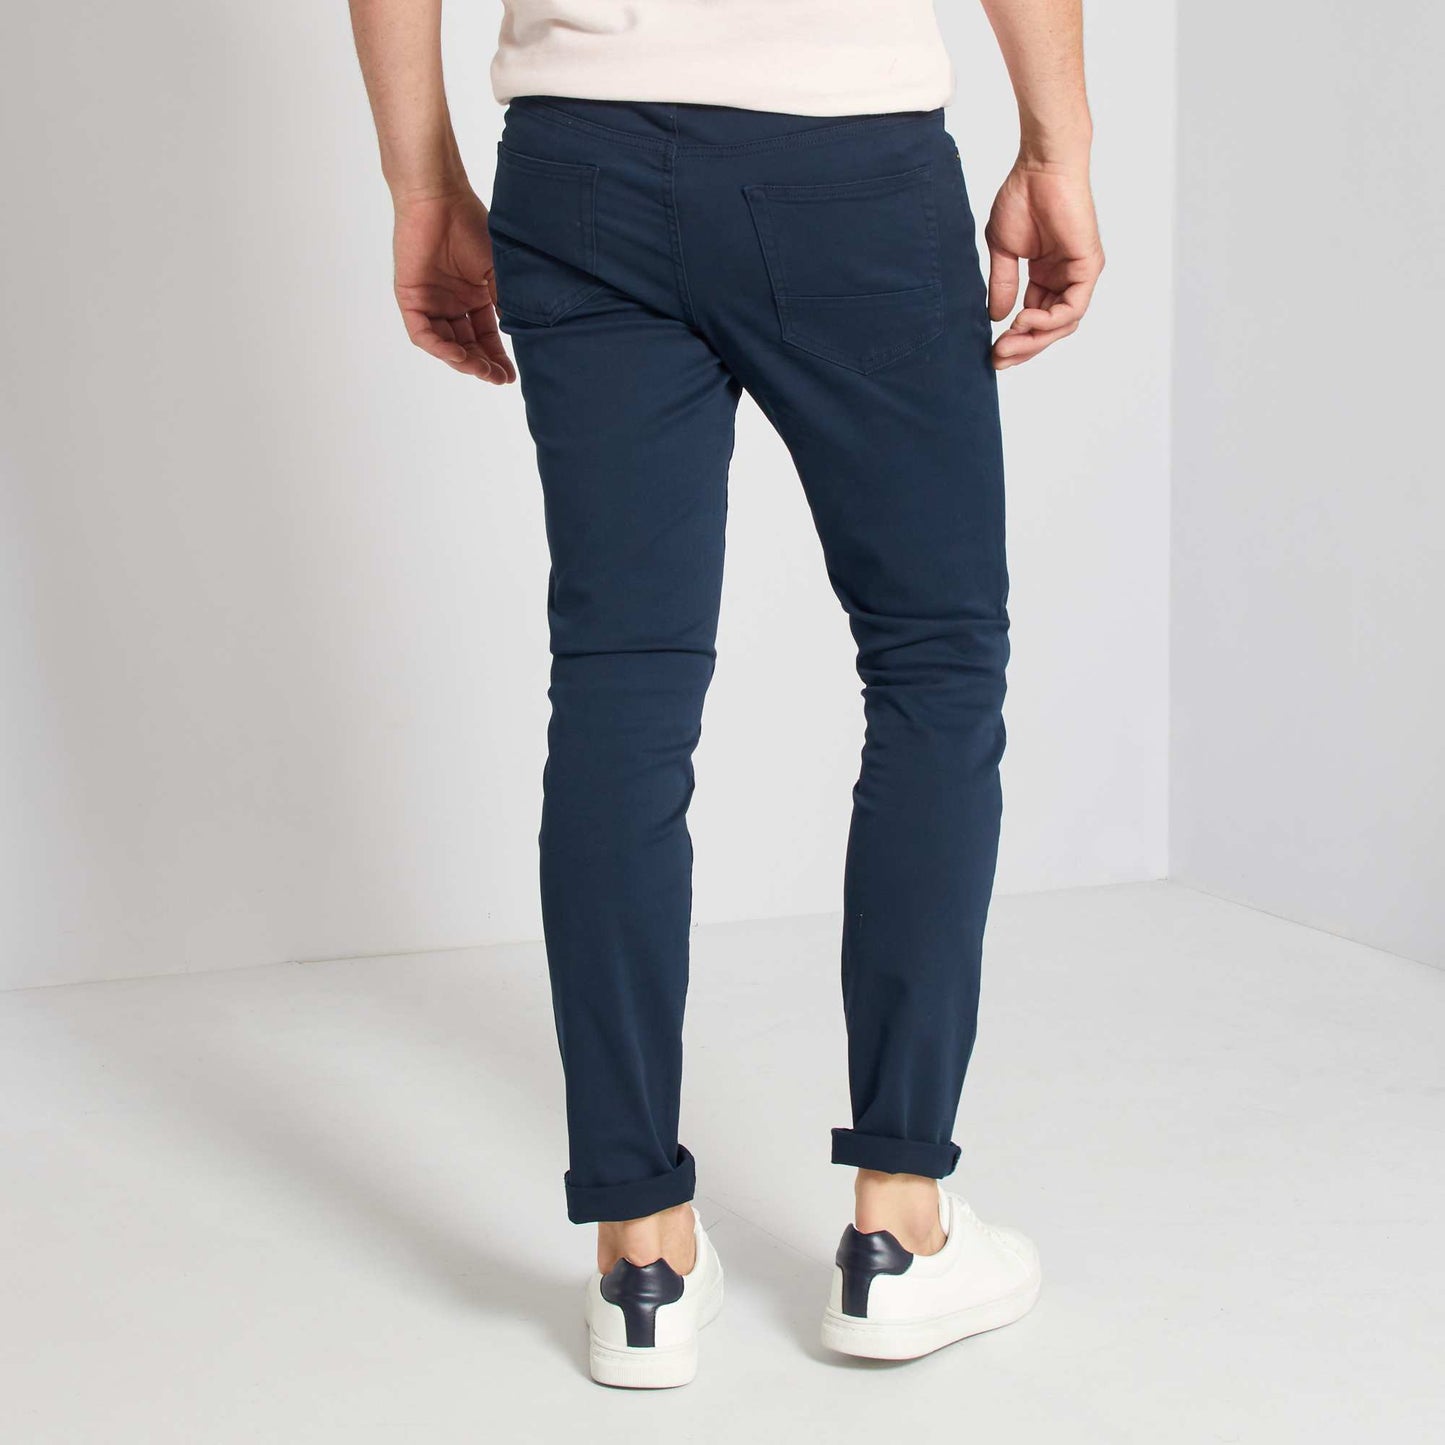 Pantalon slim 5 poches - L32 bleu marine